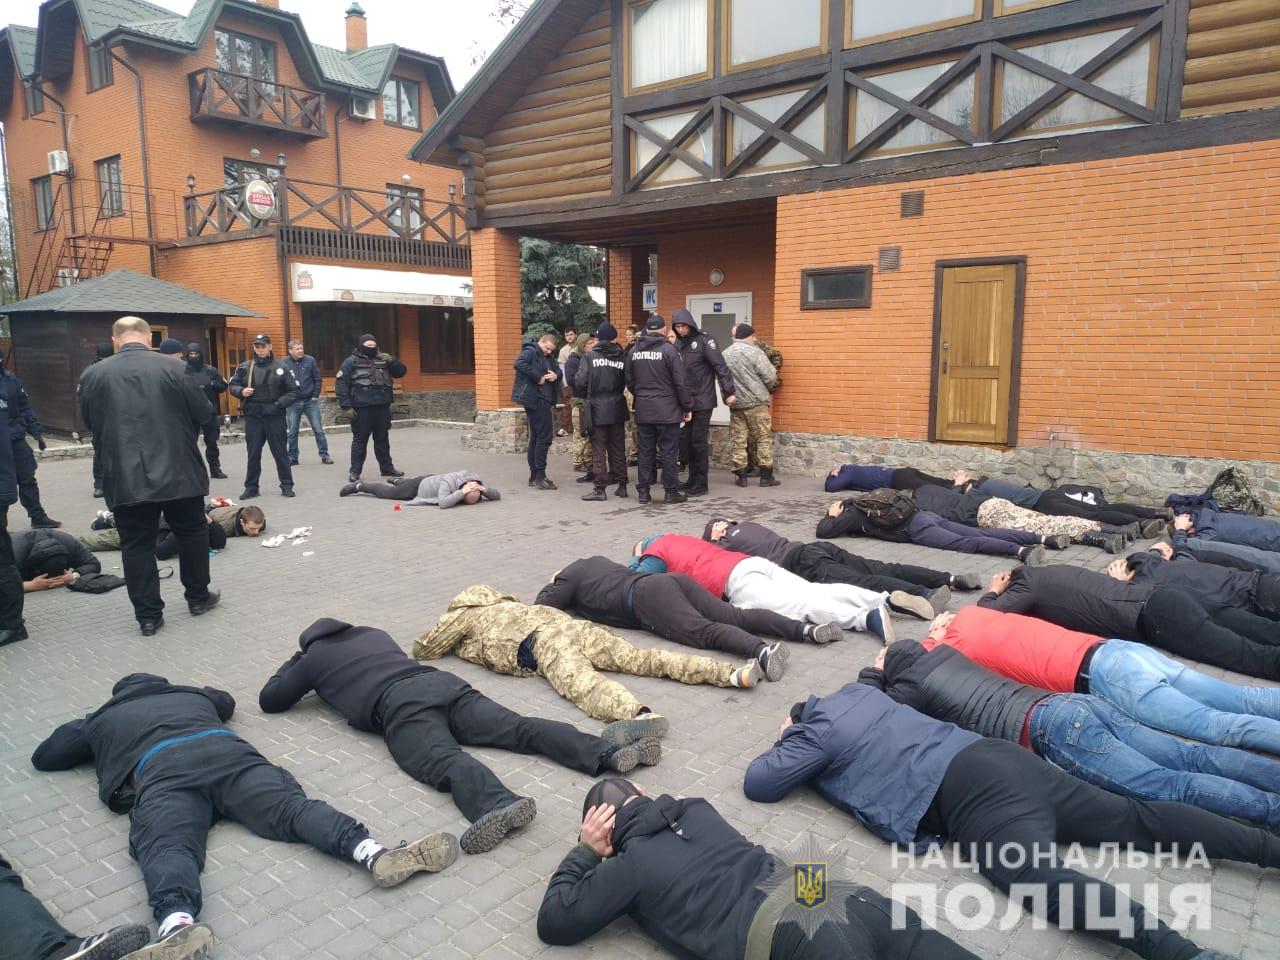 В Васильковском районе Киевщины полиция пресекла попытку рейдерского захвата аграрного кооператива (фото)